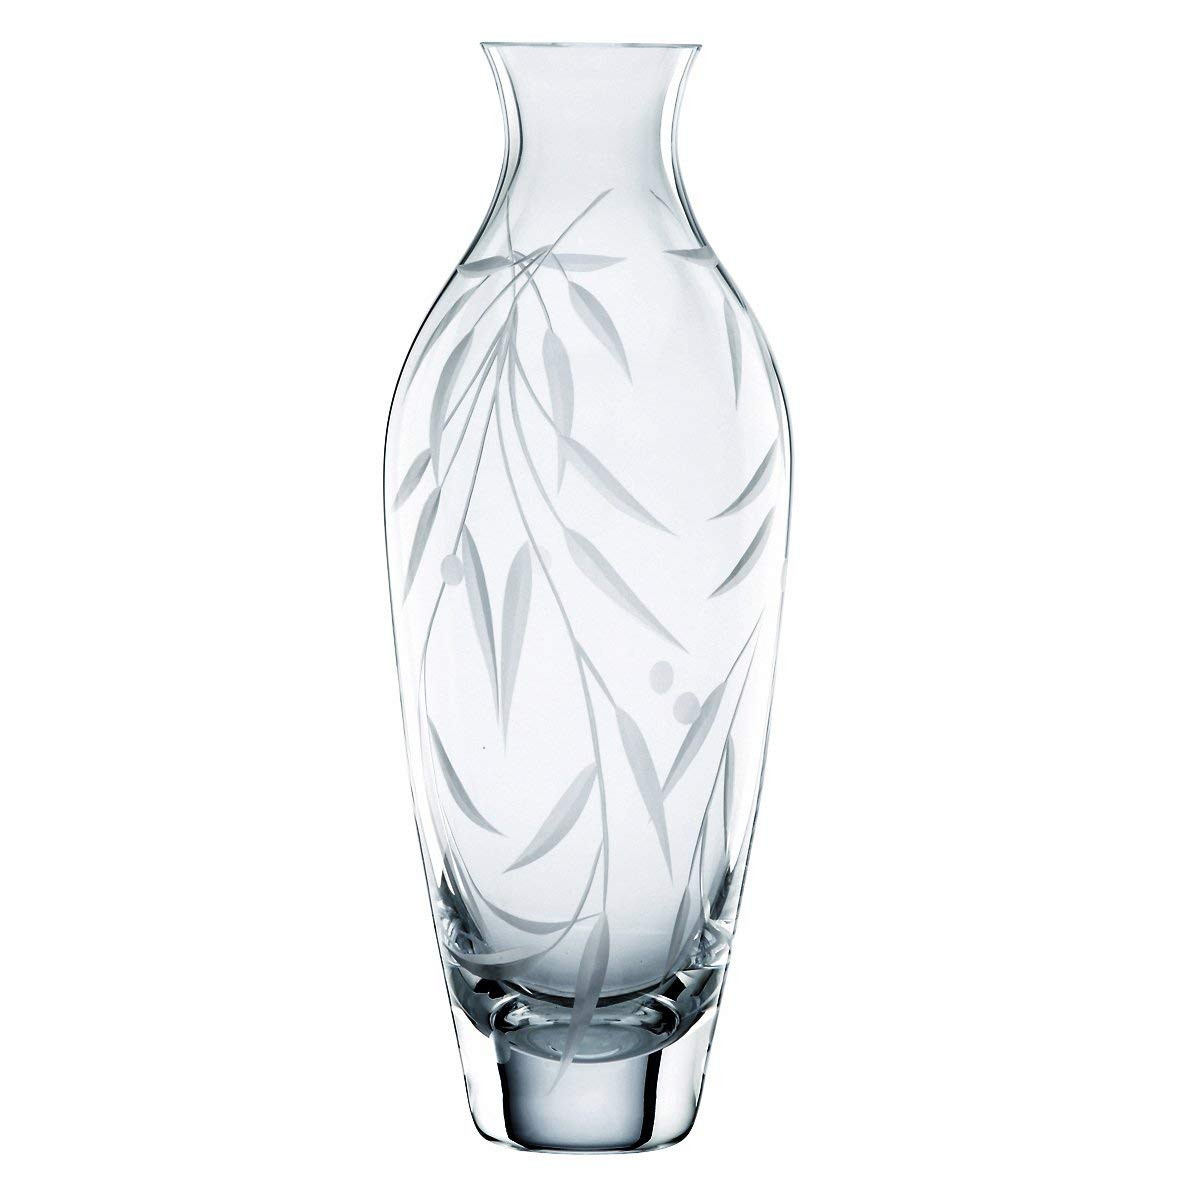 10 Lovable Lenox Bud Vases Set Of 3 2024 free download lenox bud vases set of 3 of amazon com lenox opal innocence crystal bud vase home kitchen intended for 610apullewl sl1200